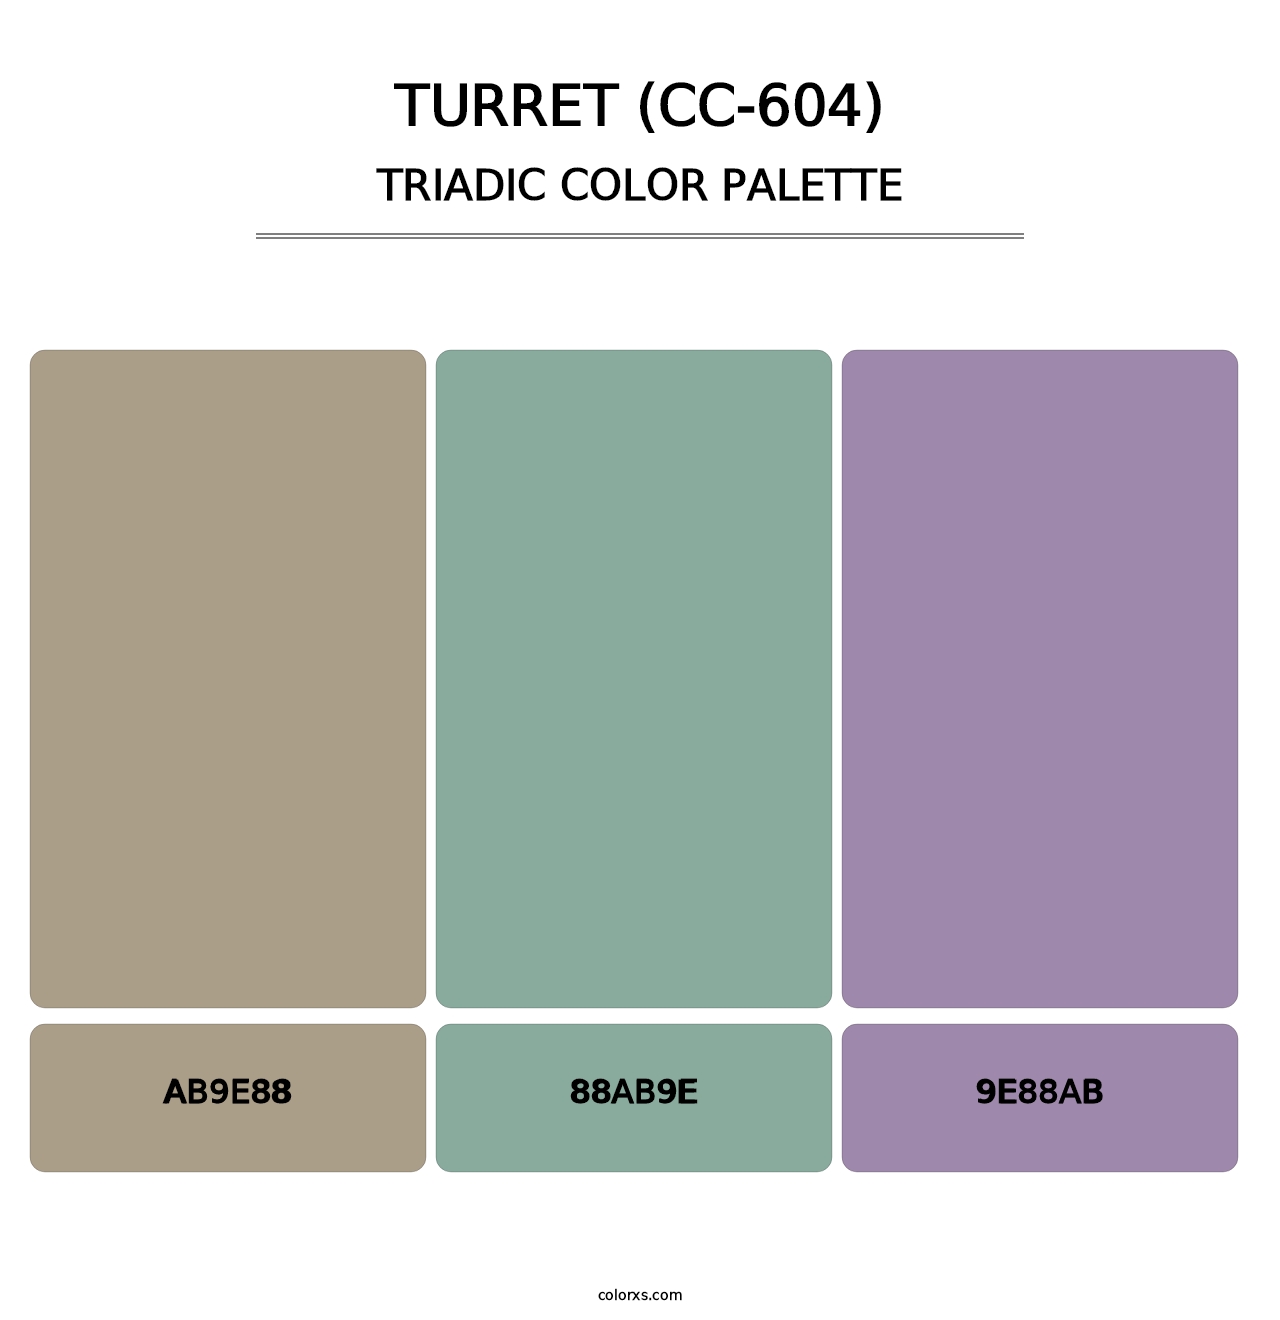 Turret (CC-604) - Triadic Color Palette